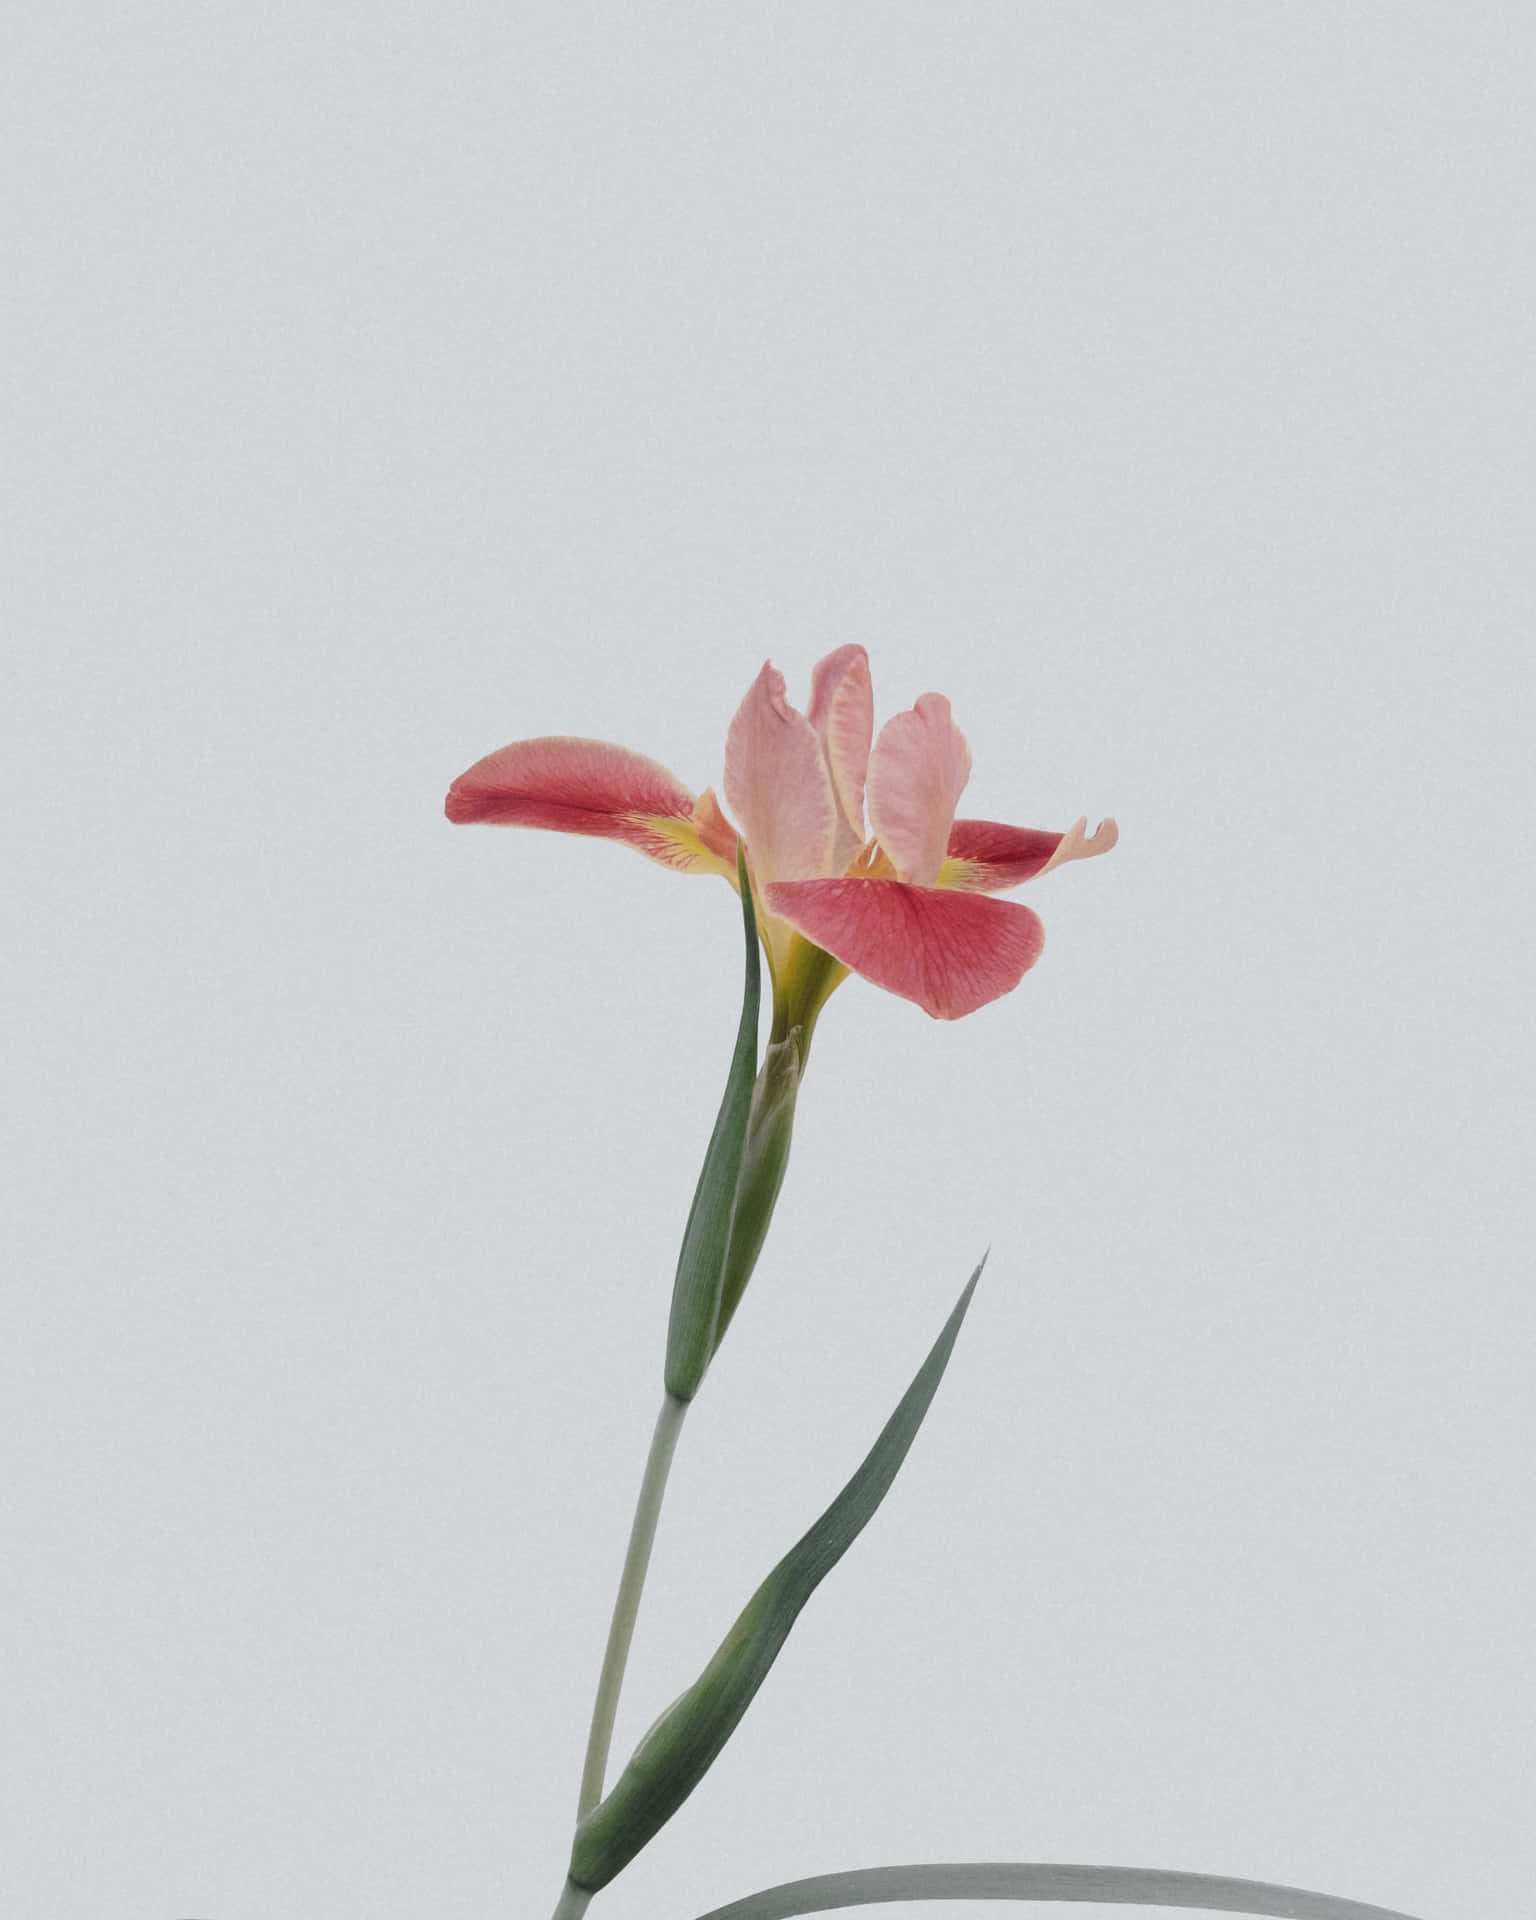 Sientela Gracia De La Naturaleza Con Esta Vibrante Flor. Fondo de pantalla